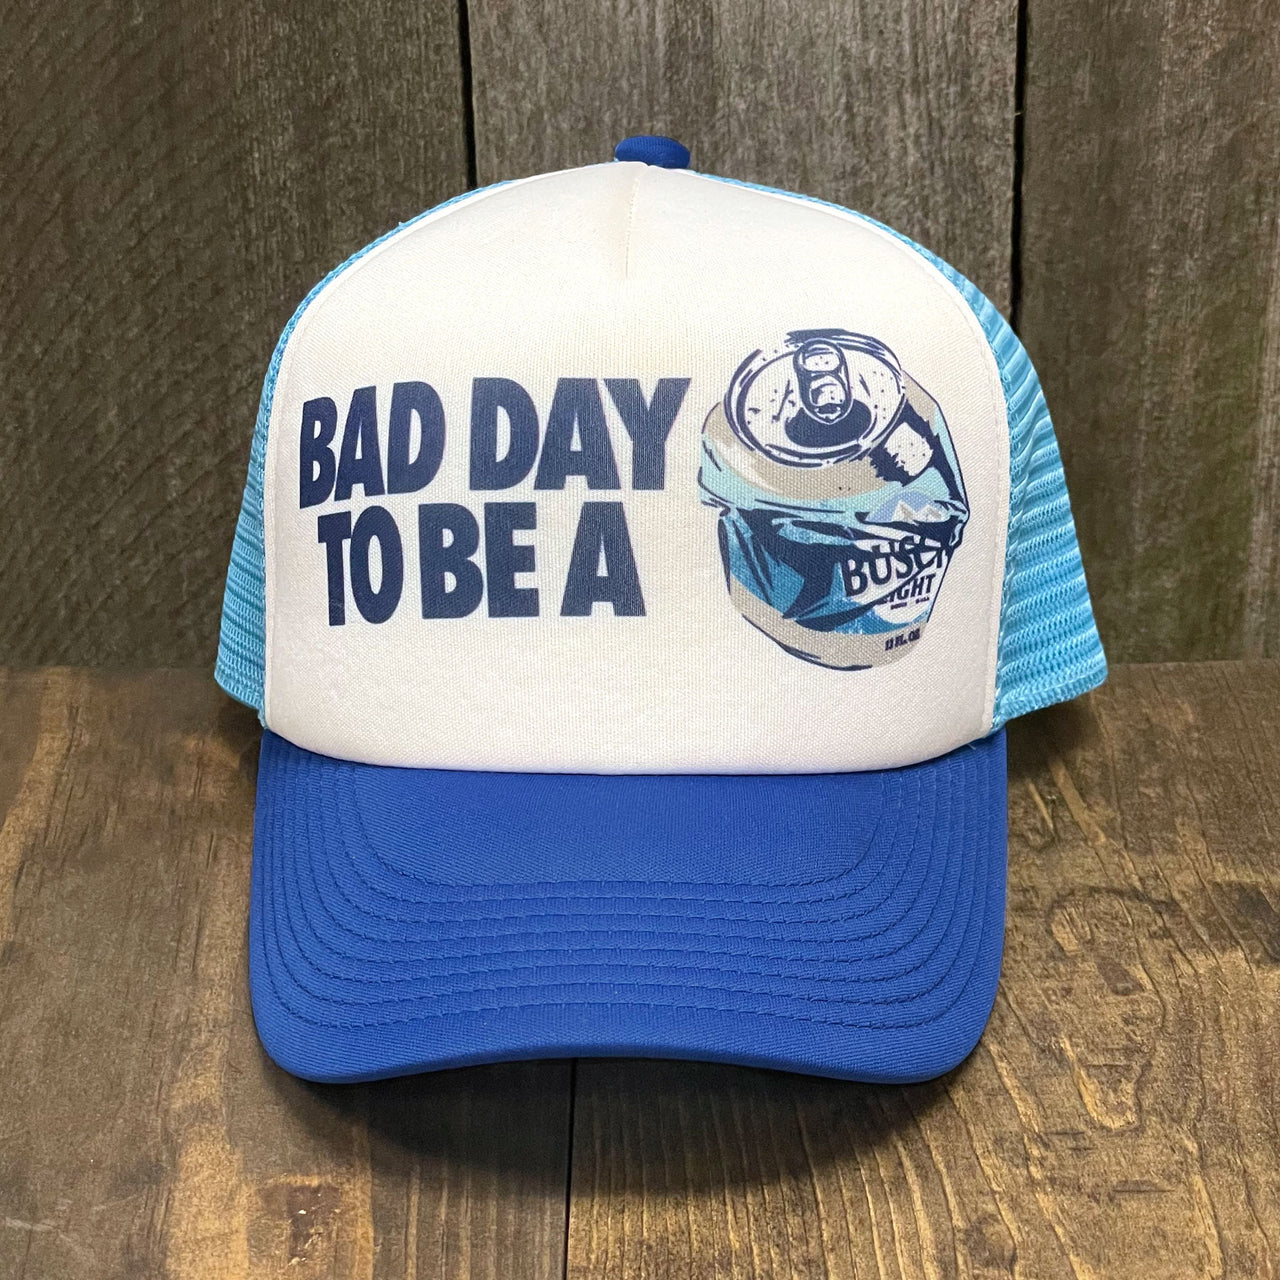 Busch Light - BAD DAY TO BE A Foam Trucker Hat - Snapback